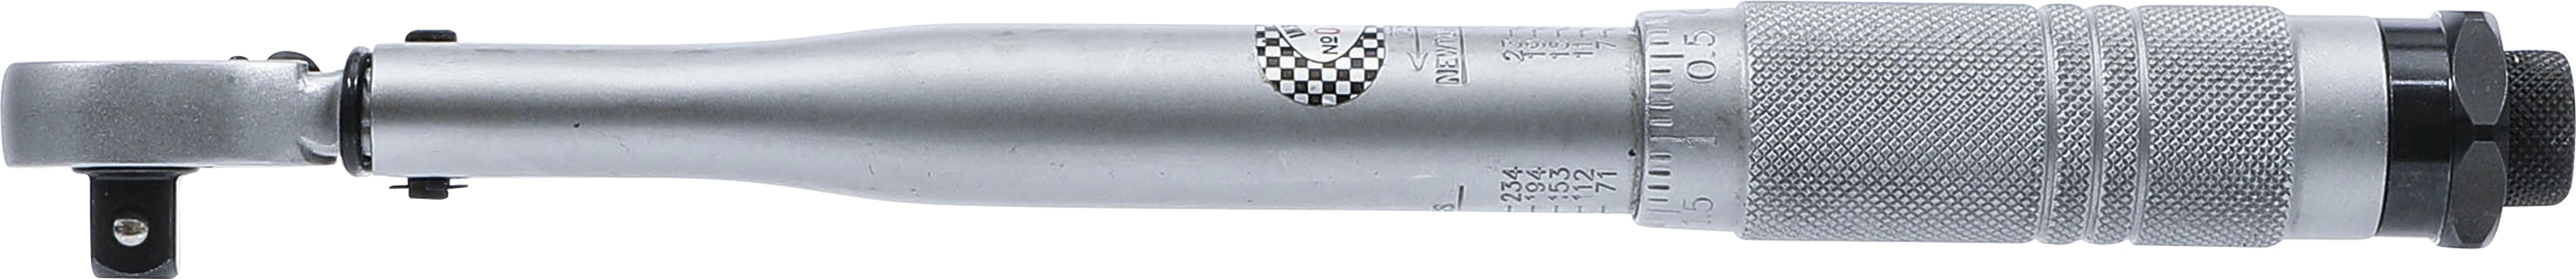 BGS Drehmomentschlüssel | Abtrieb Außenvierkant 10 mm (3/8") | 5 - 25 Nm